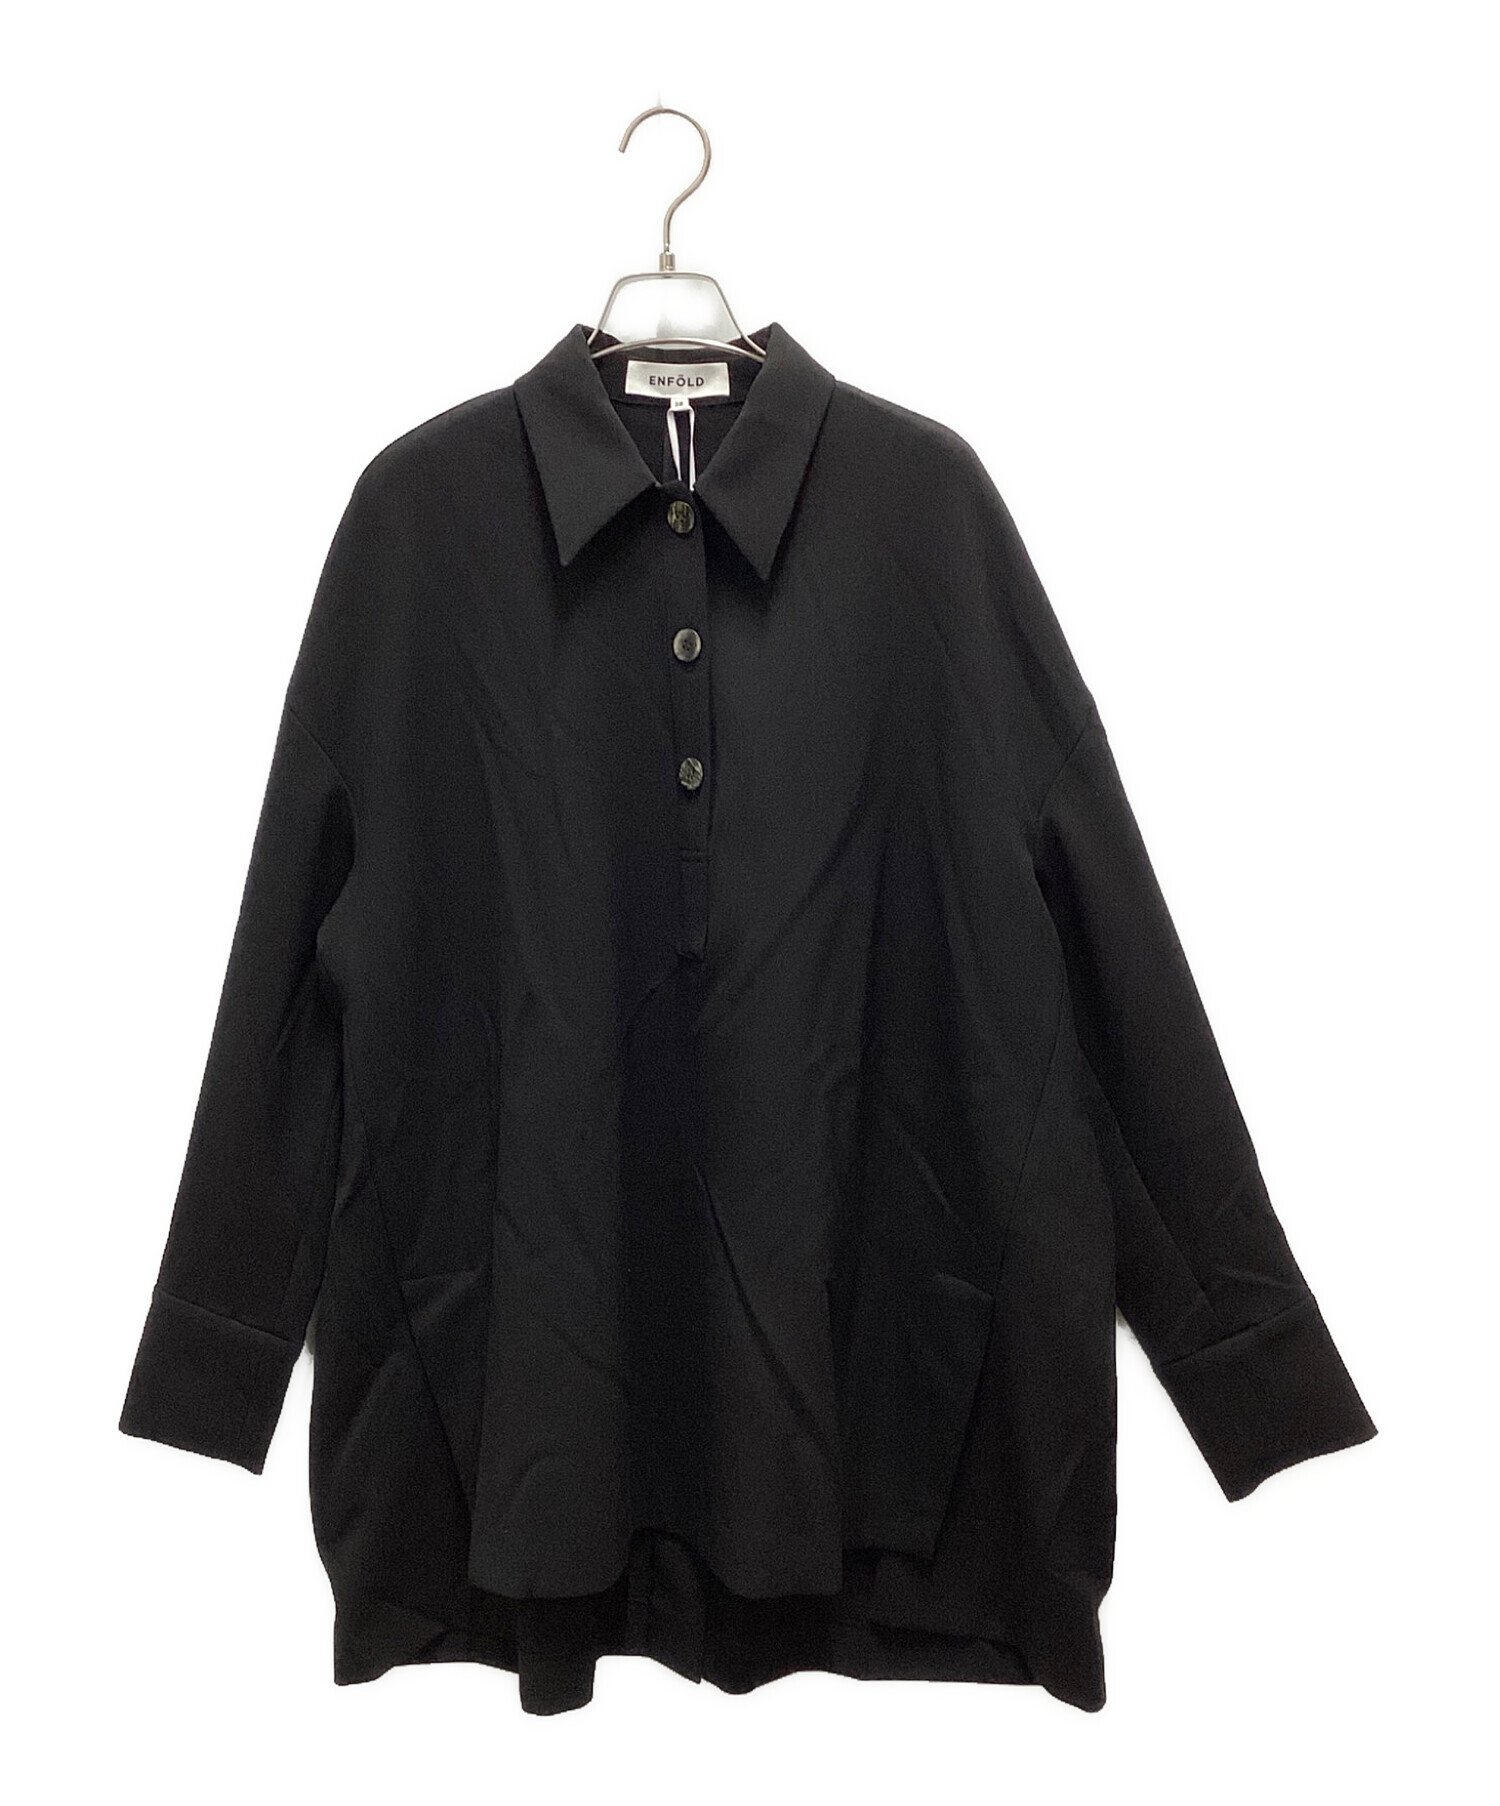 ENFOLD (エンフォルド) ダブルクロスカーブアームポロシャツ ブラック サイズ:38